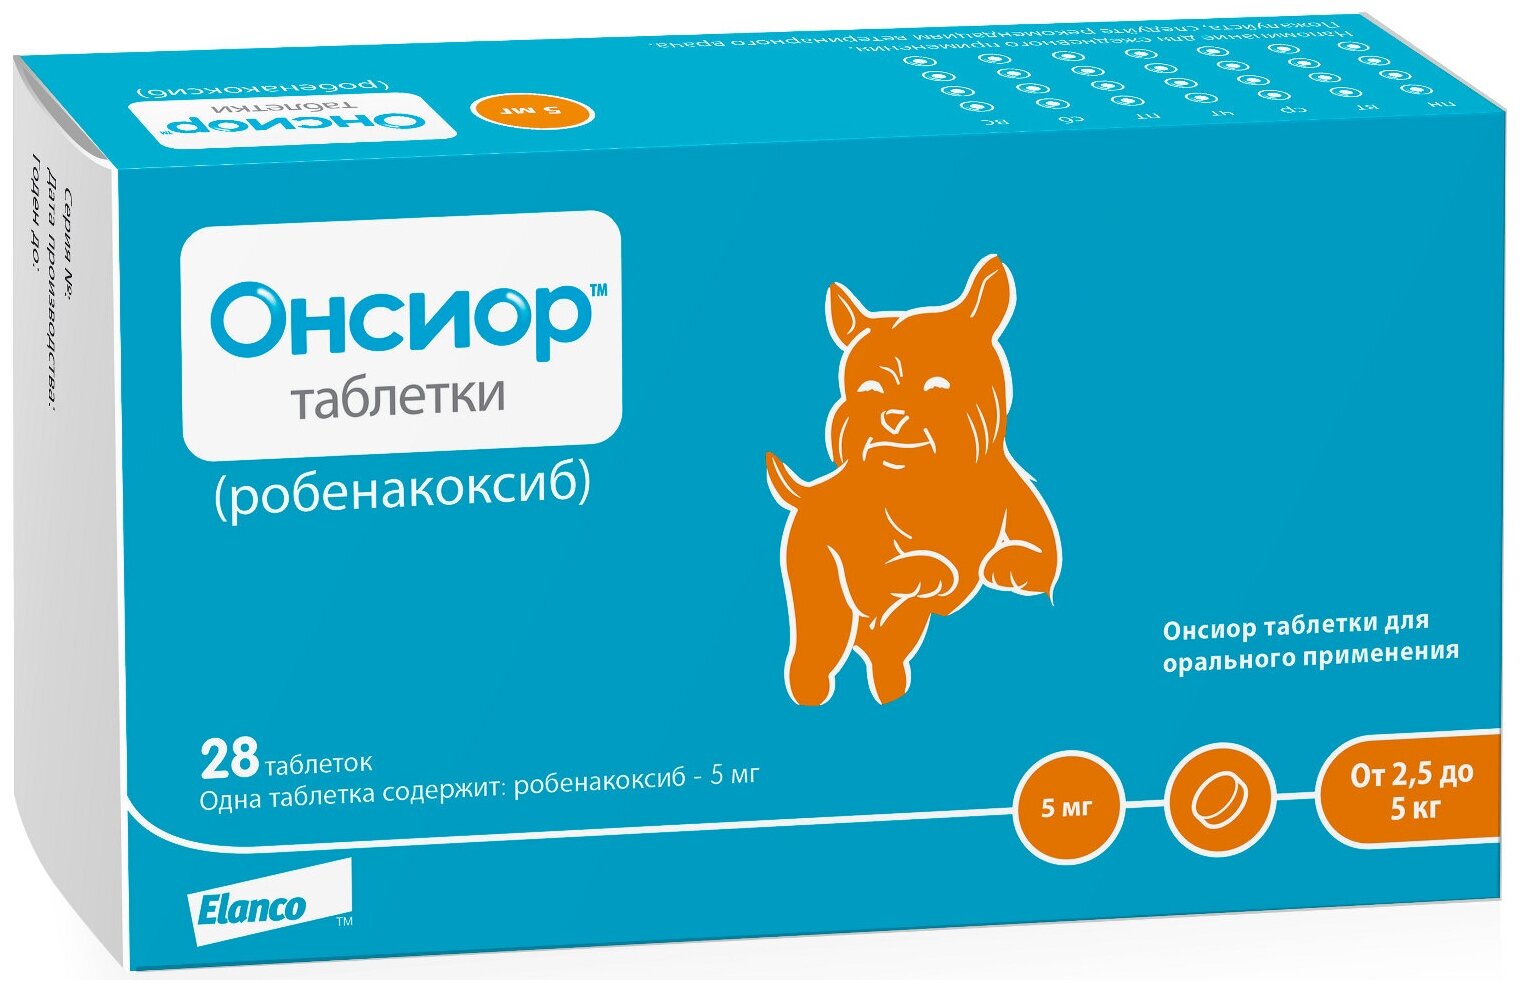 Elanco Онсиор 5 мг противовоспалительный и болеутоляющий препарат для собак 28 таблеток